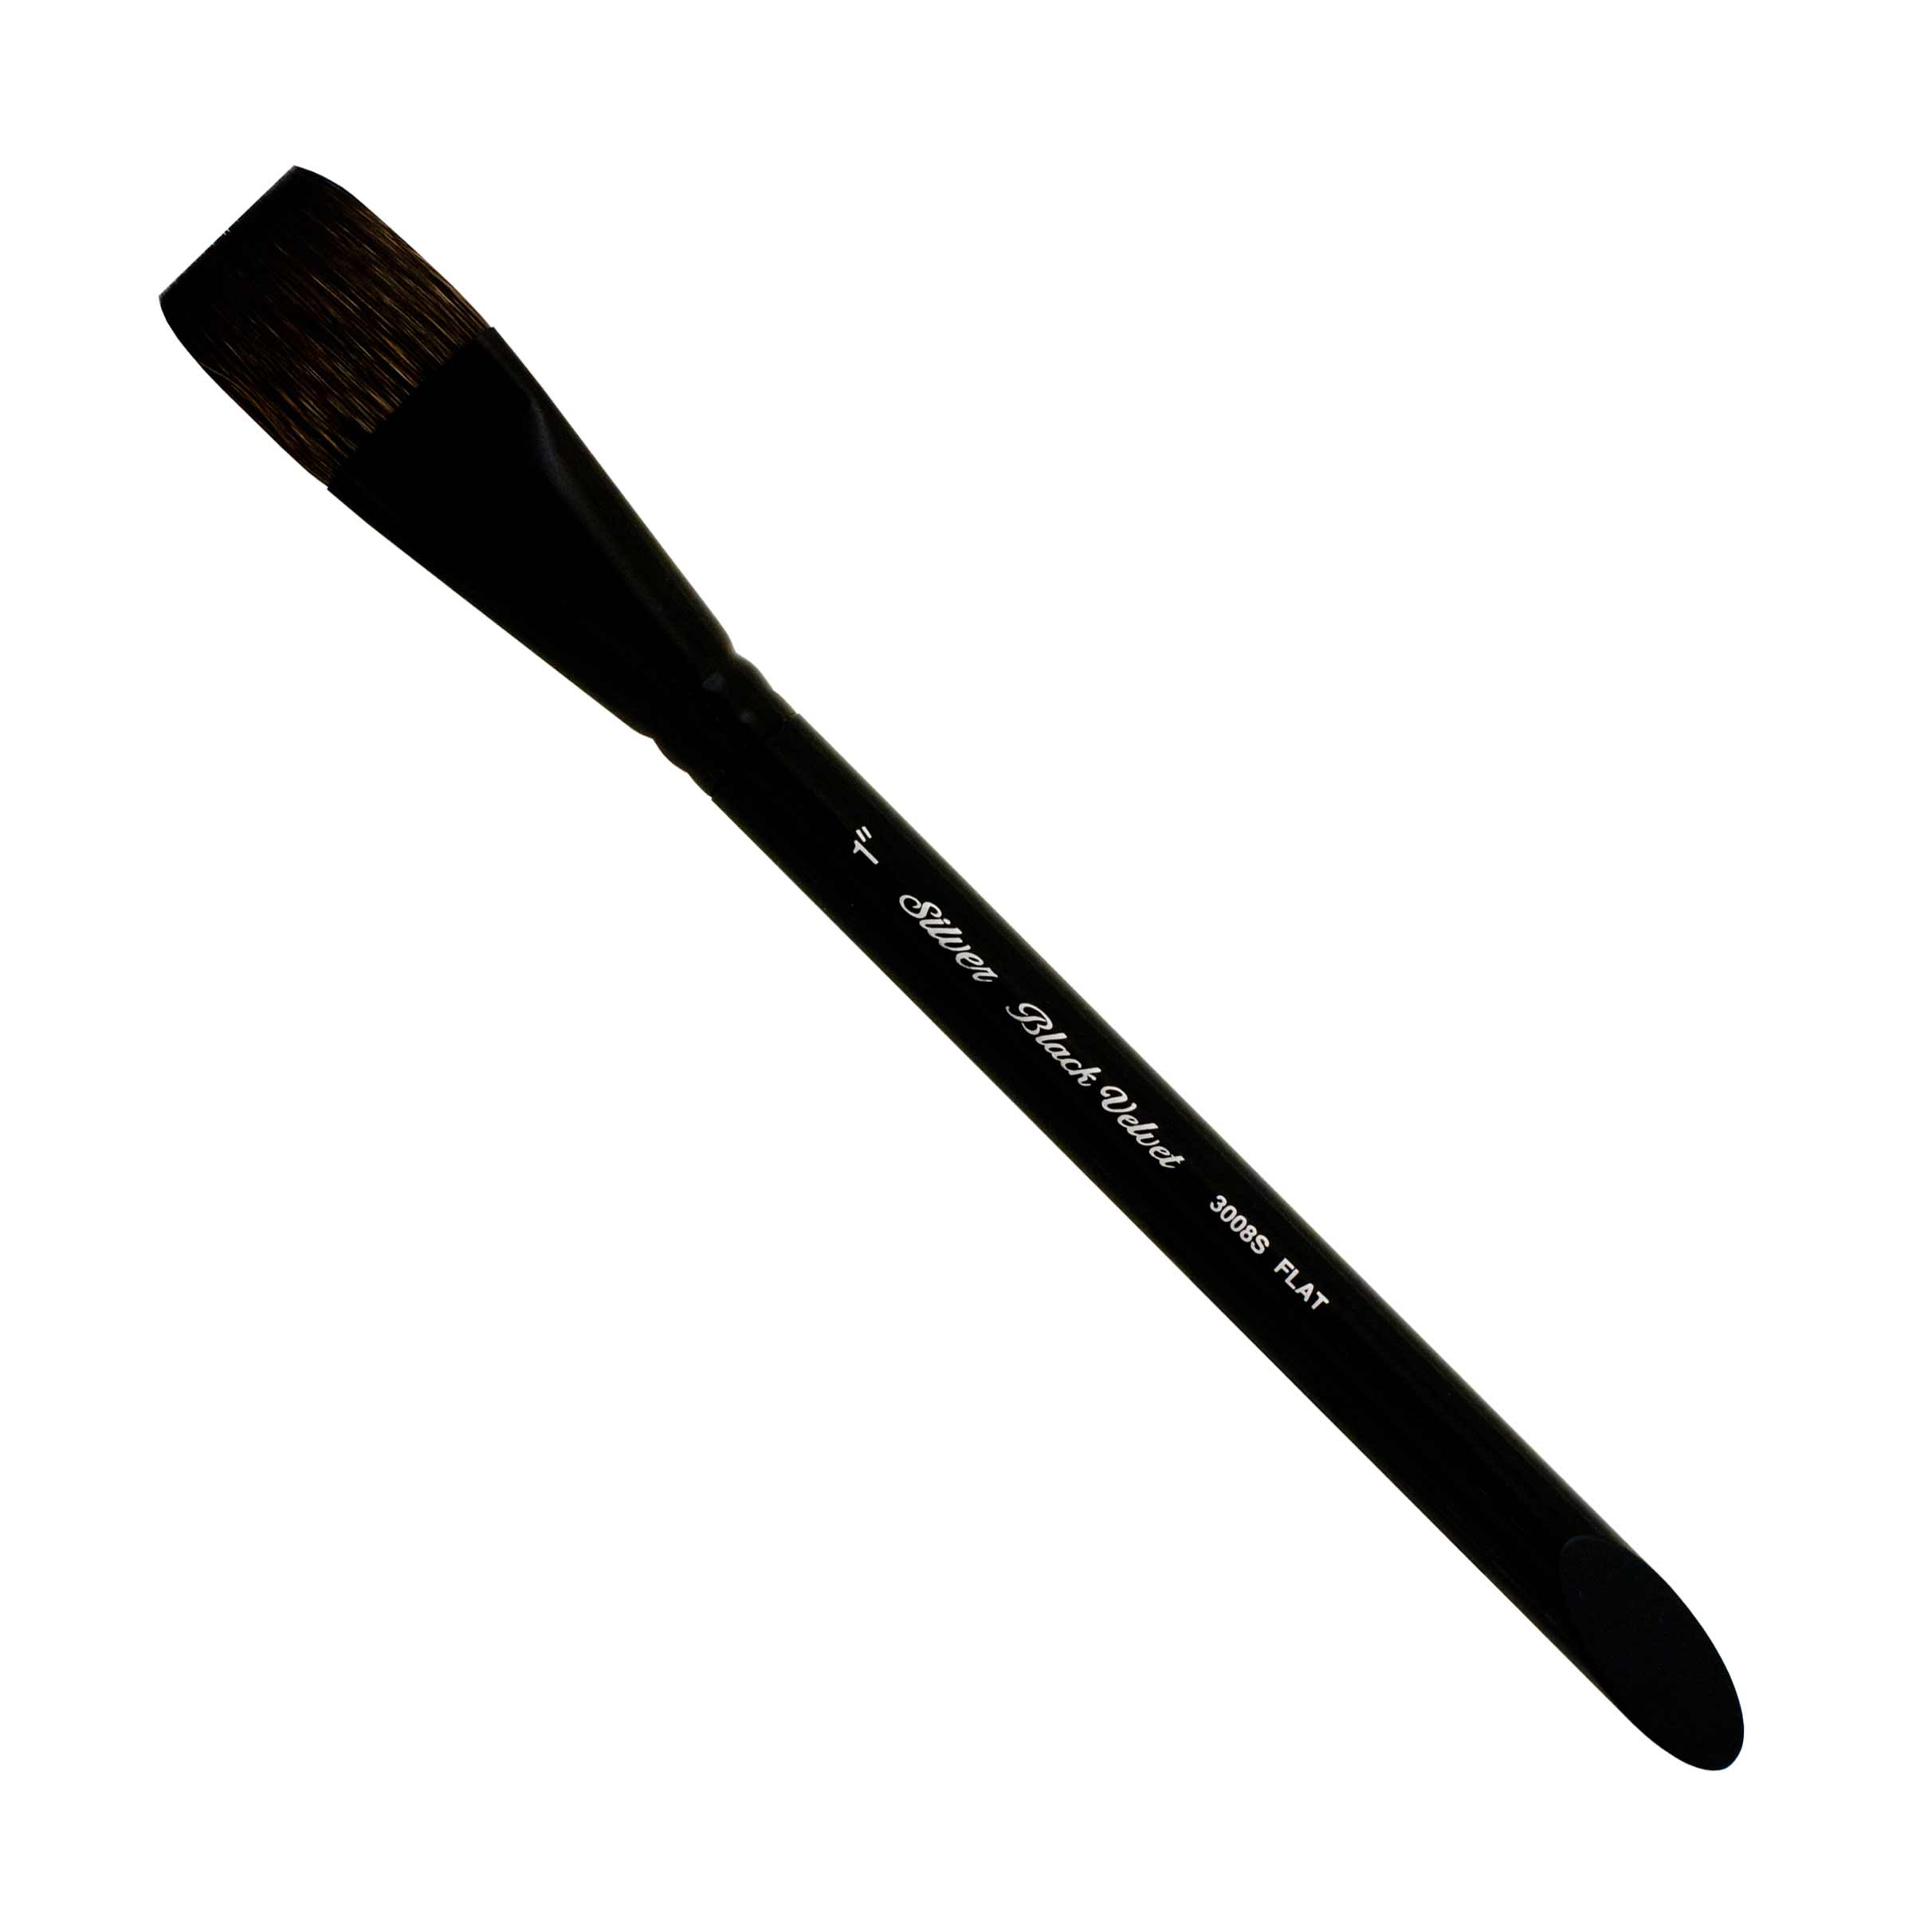 Silver Brush Black Velvet® Watercolor Brush Series 3014S Wash 2